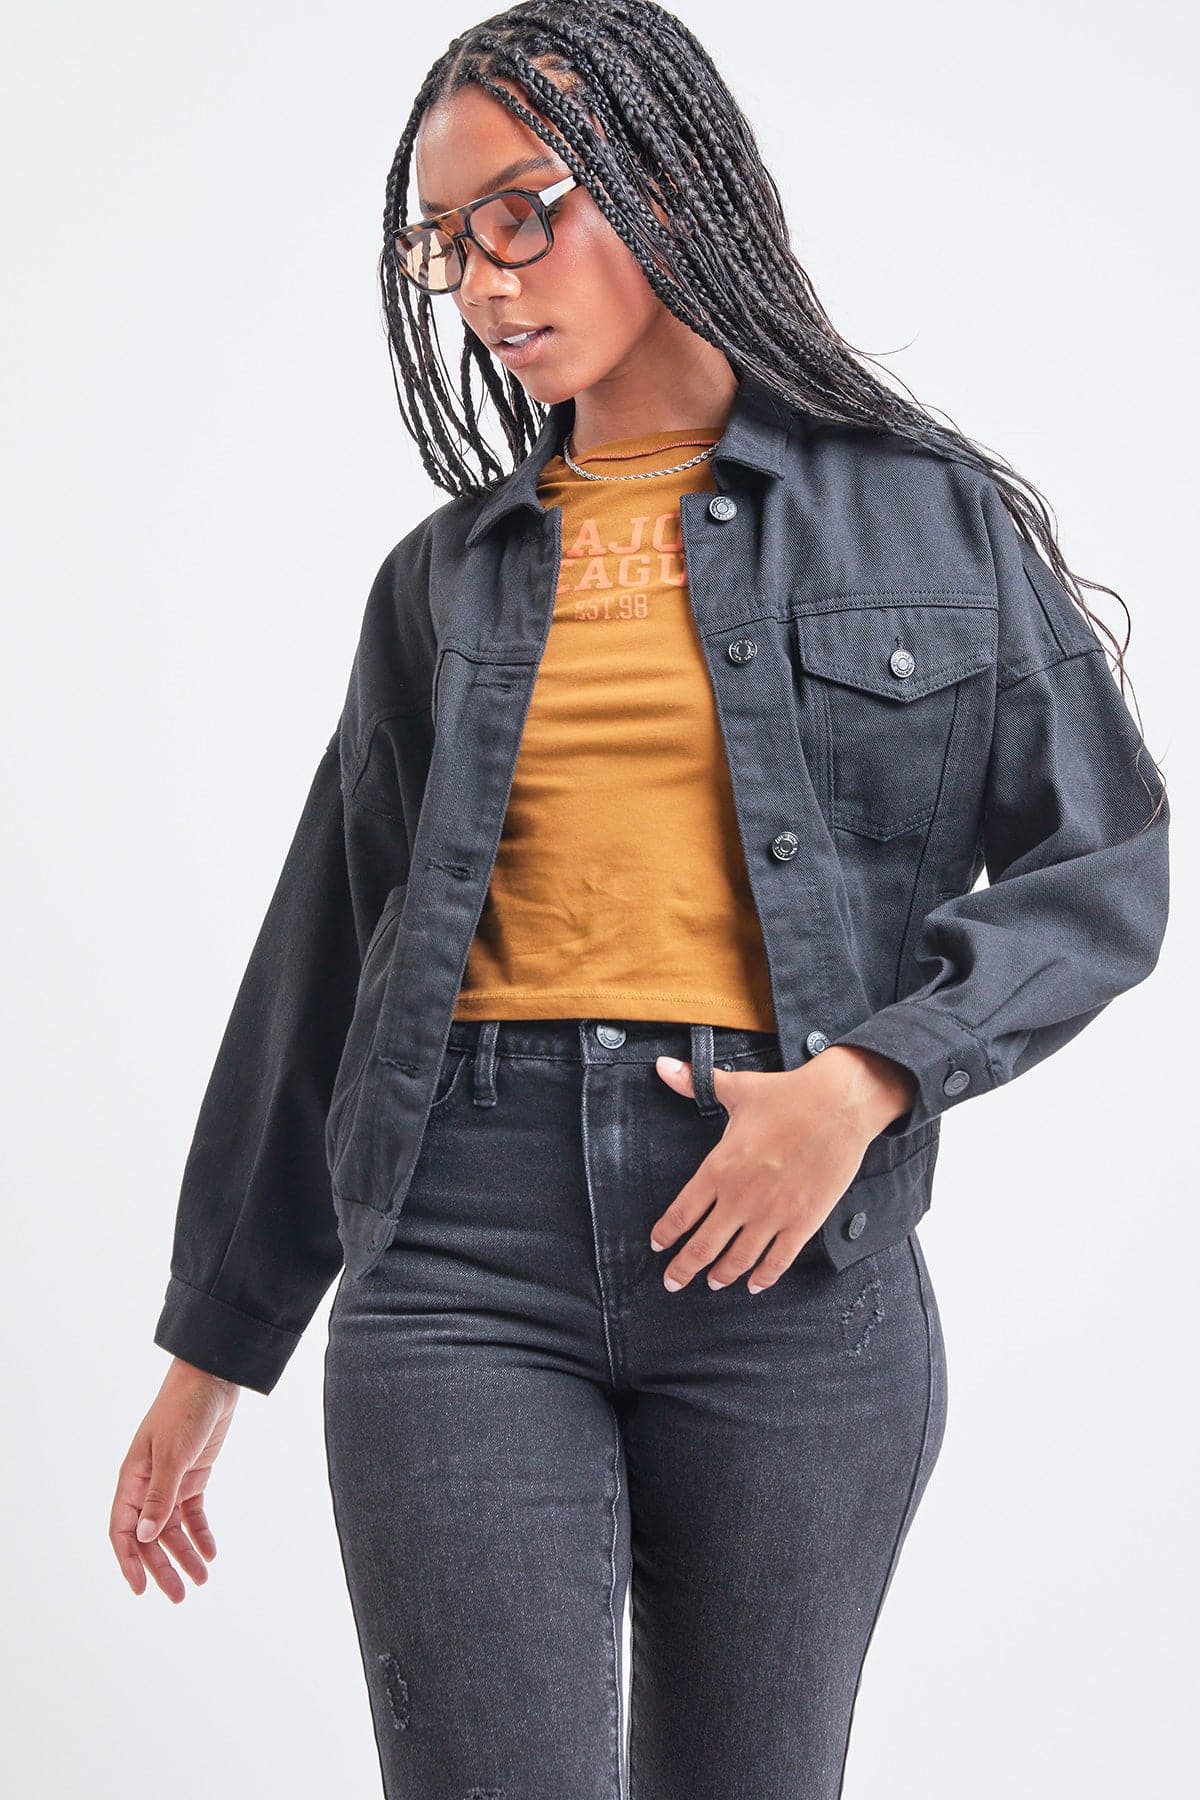 Women's 80's Style Denim Jacket With Elastic Hem from YMI – YMI JEANS